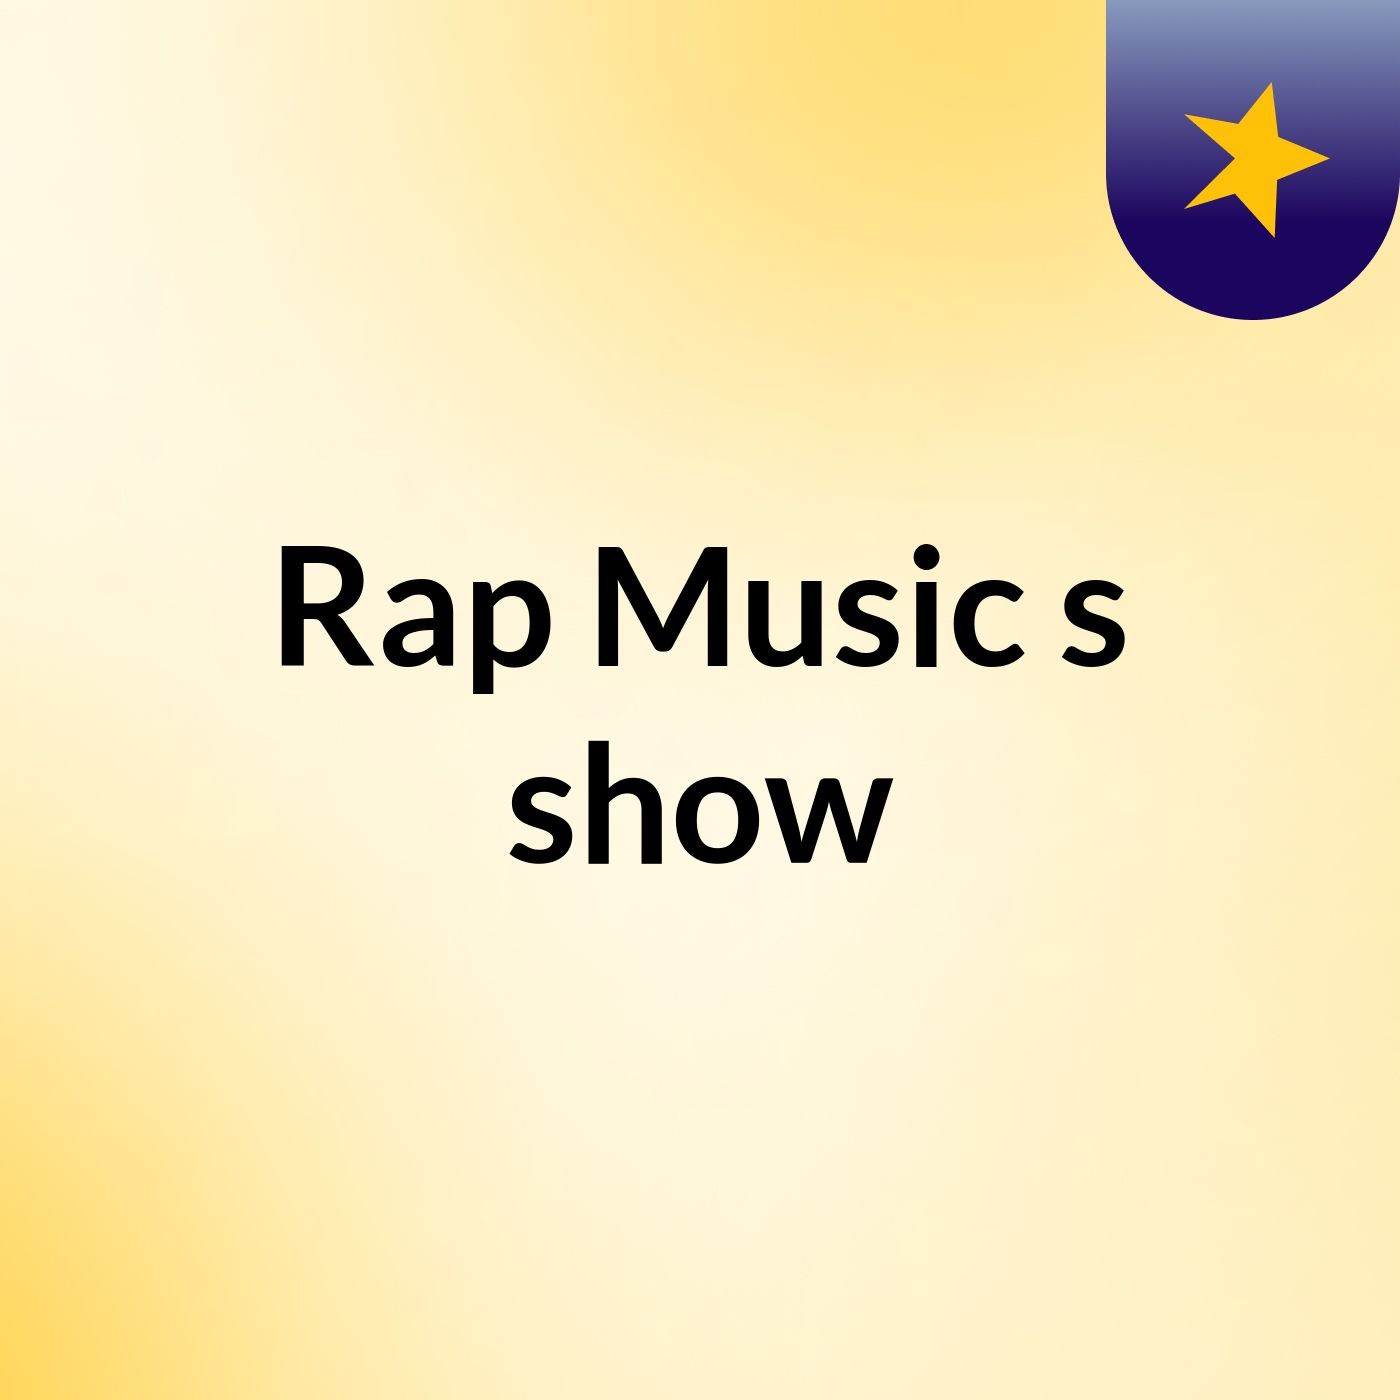 Rap Music's show